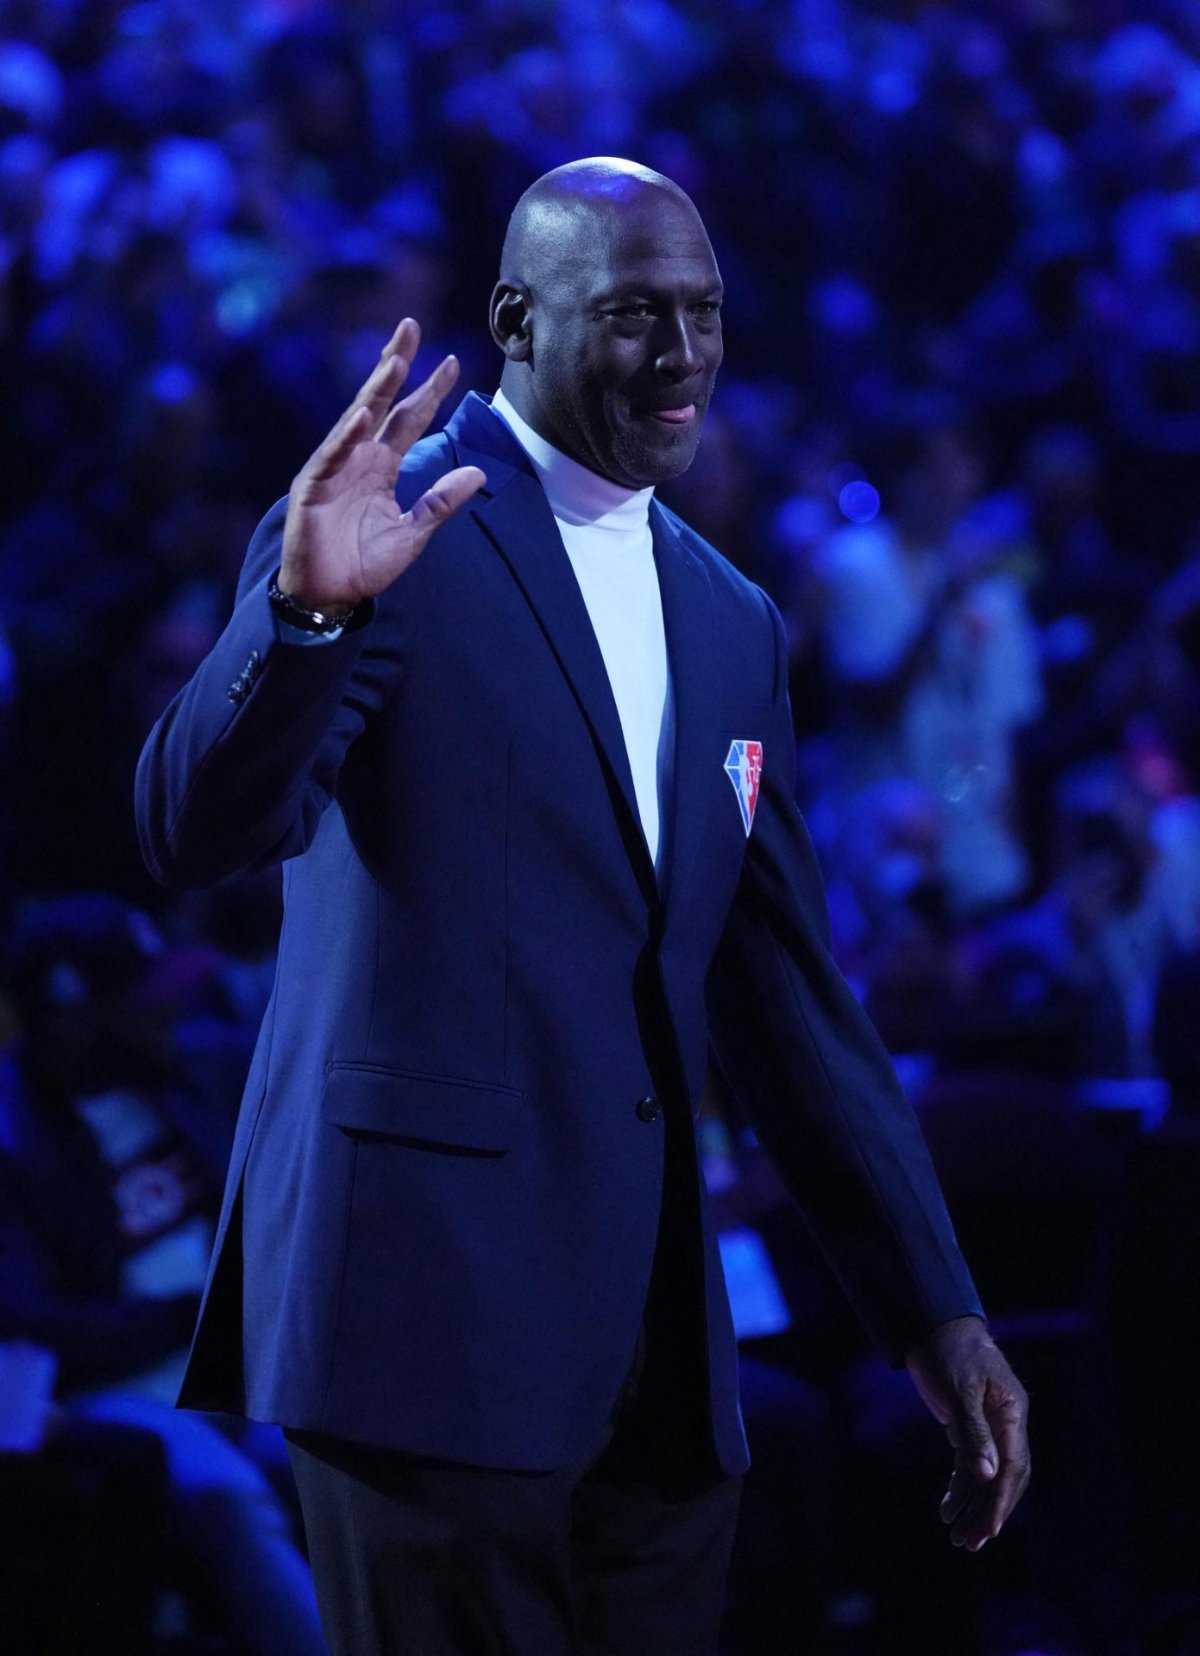 Les fans réagissent à la photo virale de Bulls Legend montrant l'impressionnant Balmain Fit du chanteur au NBA All Star Game